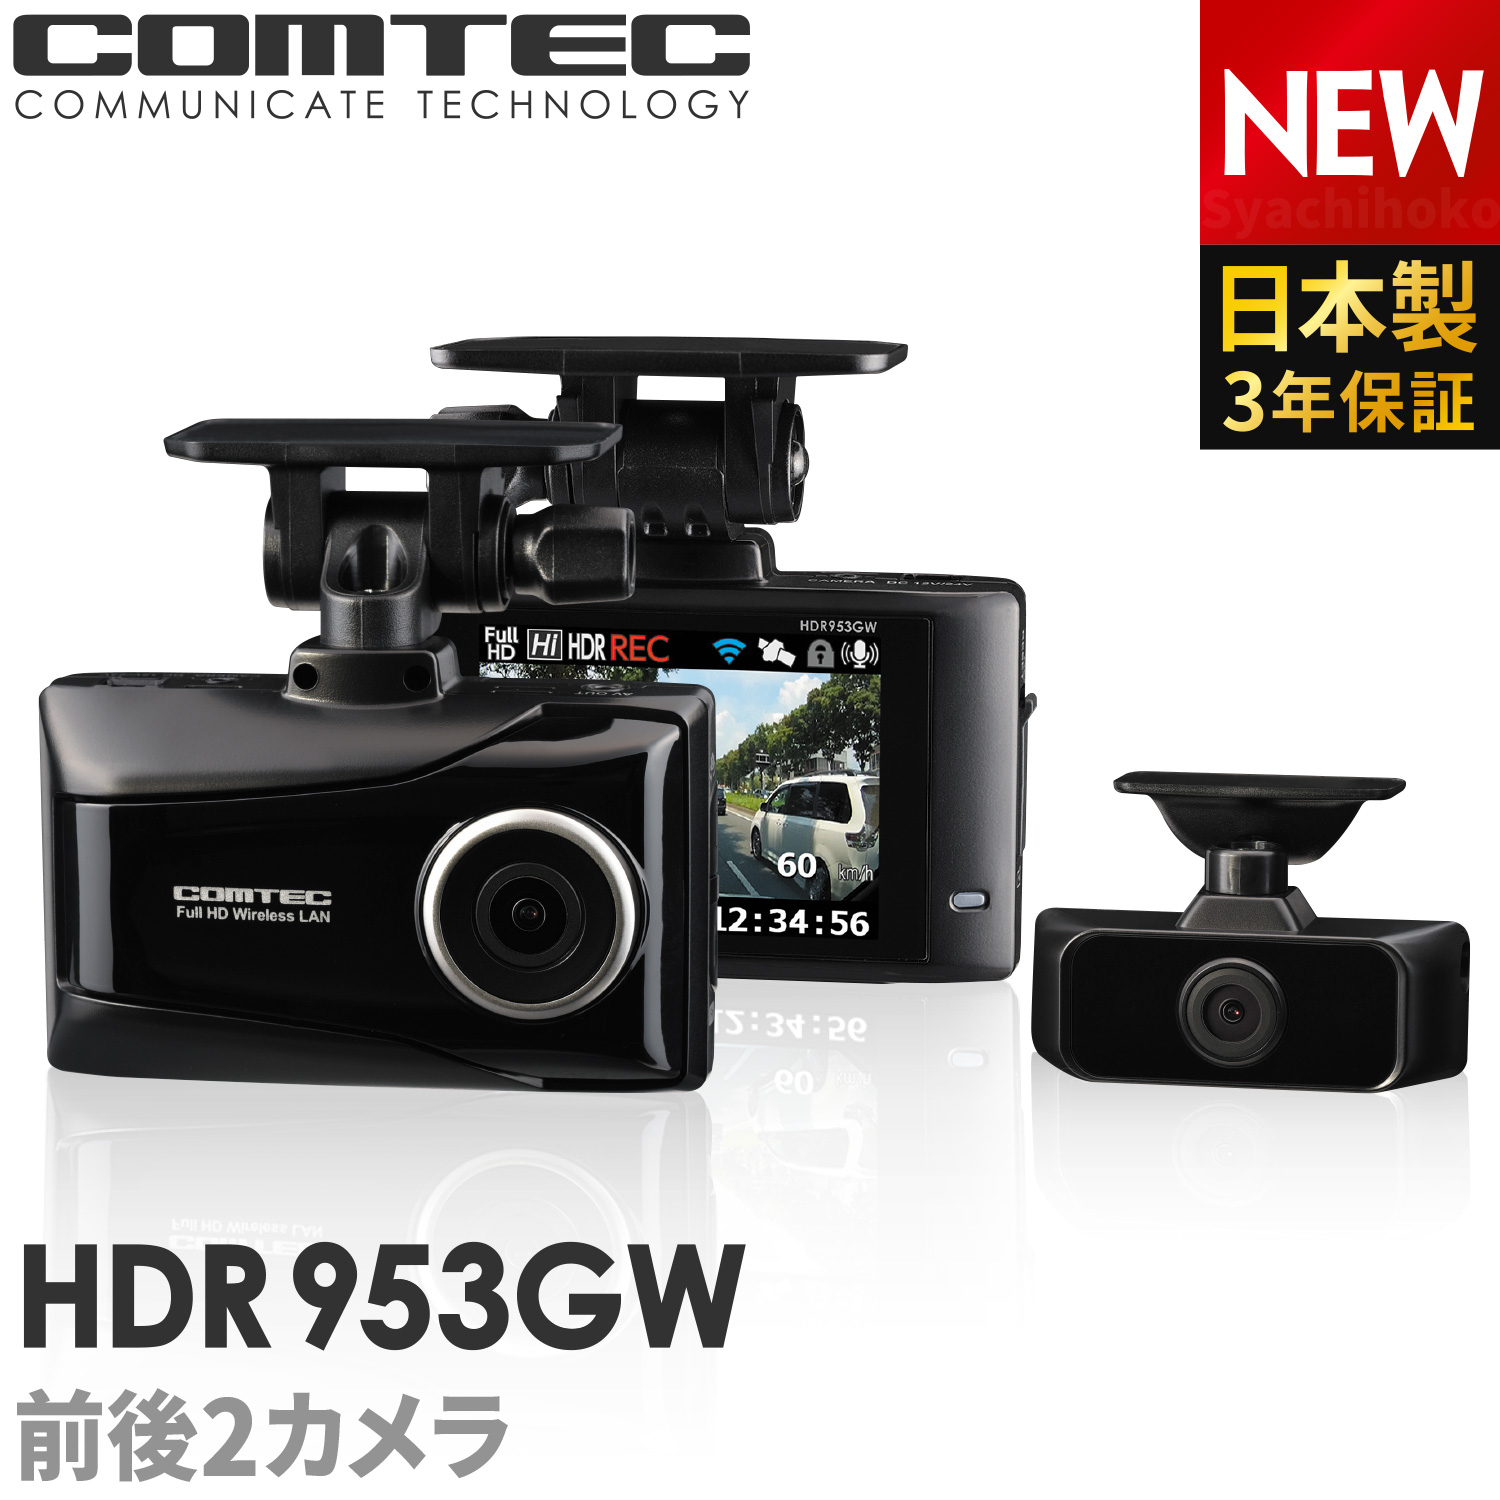 2020年11月発売の新商品 ドライブレコーダー 前後車内2カメラ コムテック HDR953GW 日本製 ノイズ対策済 フルHD高画質 常時 衝撃録画 GPS搭載 駐車監視対応 2.7インチ液晶